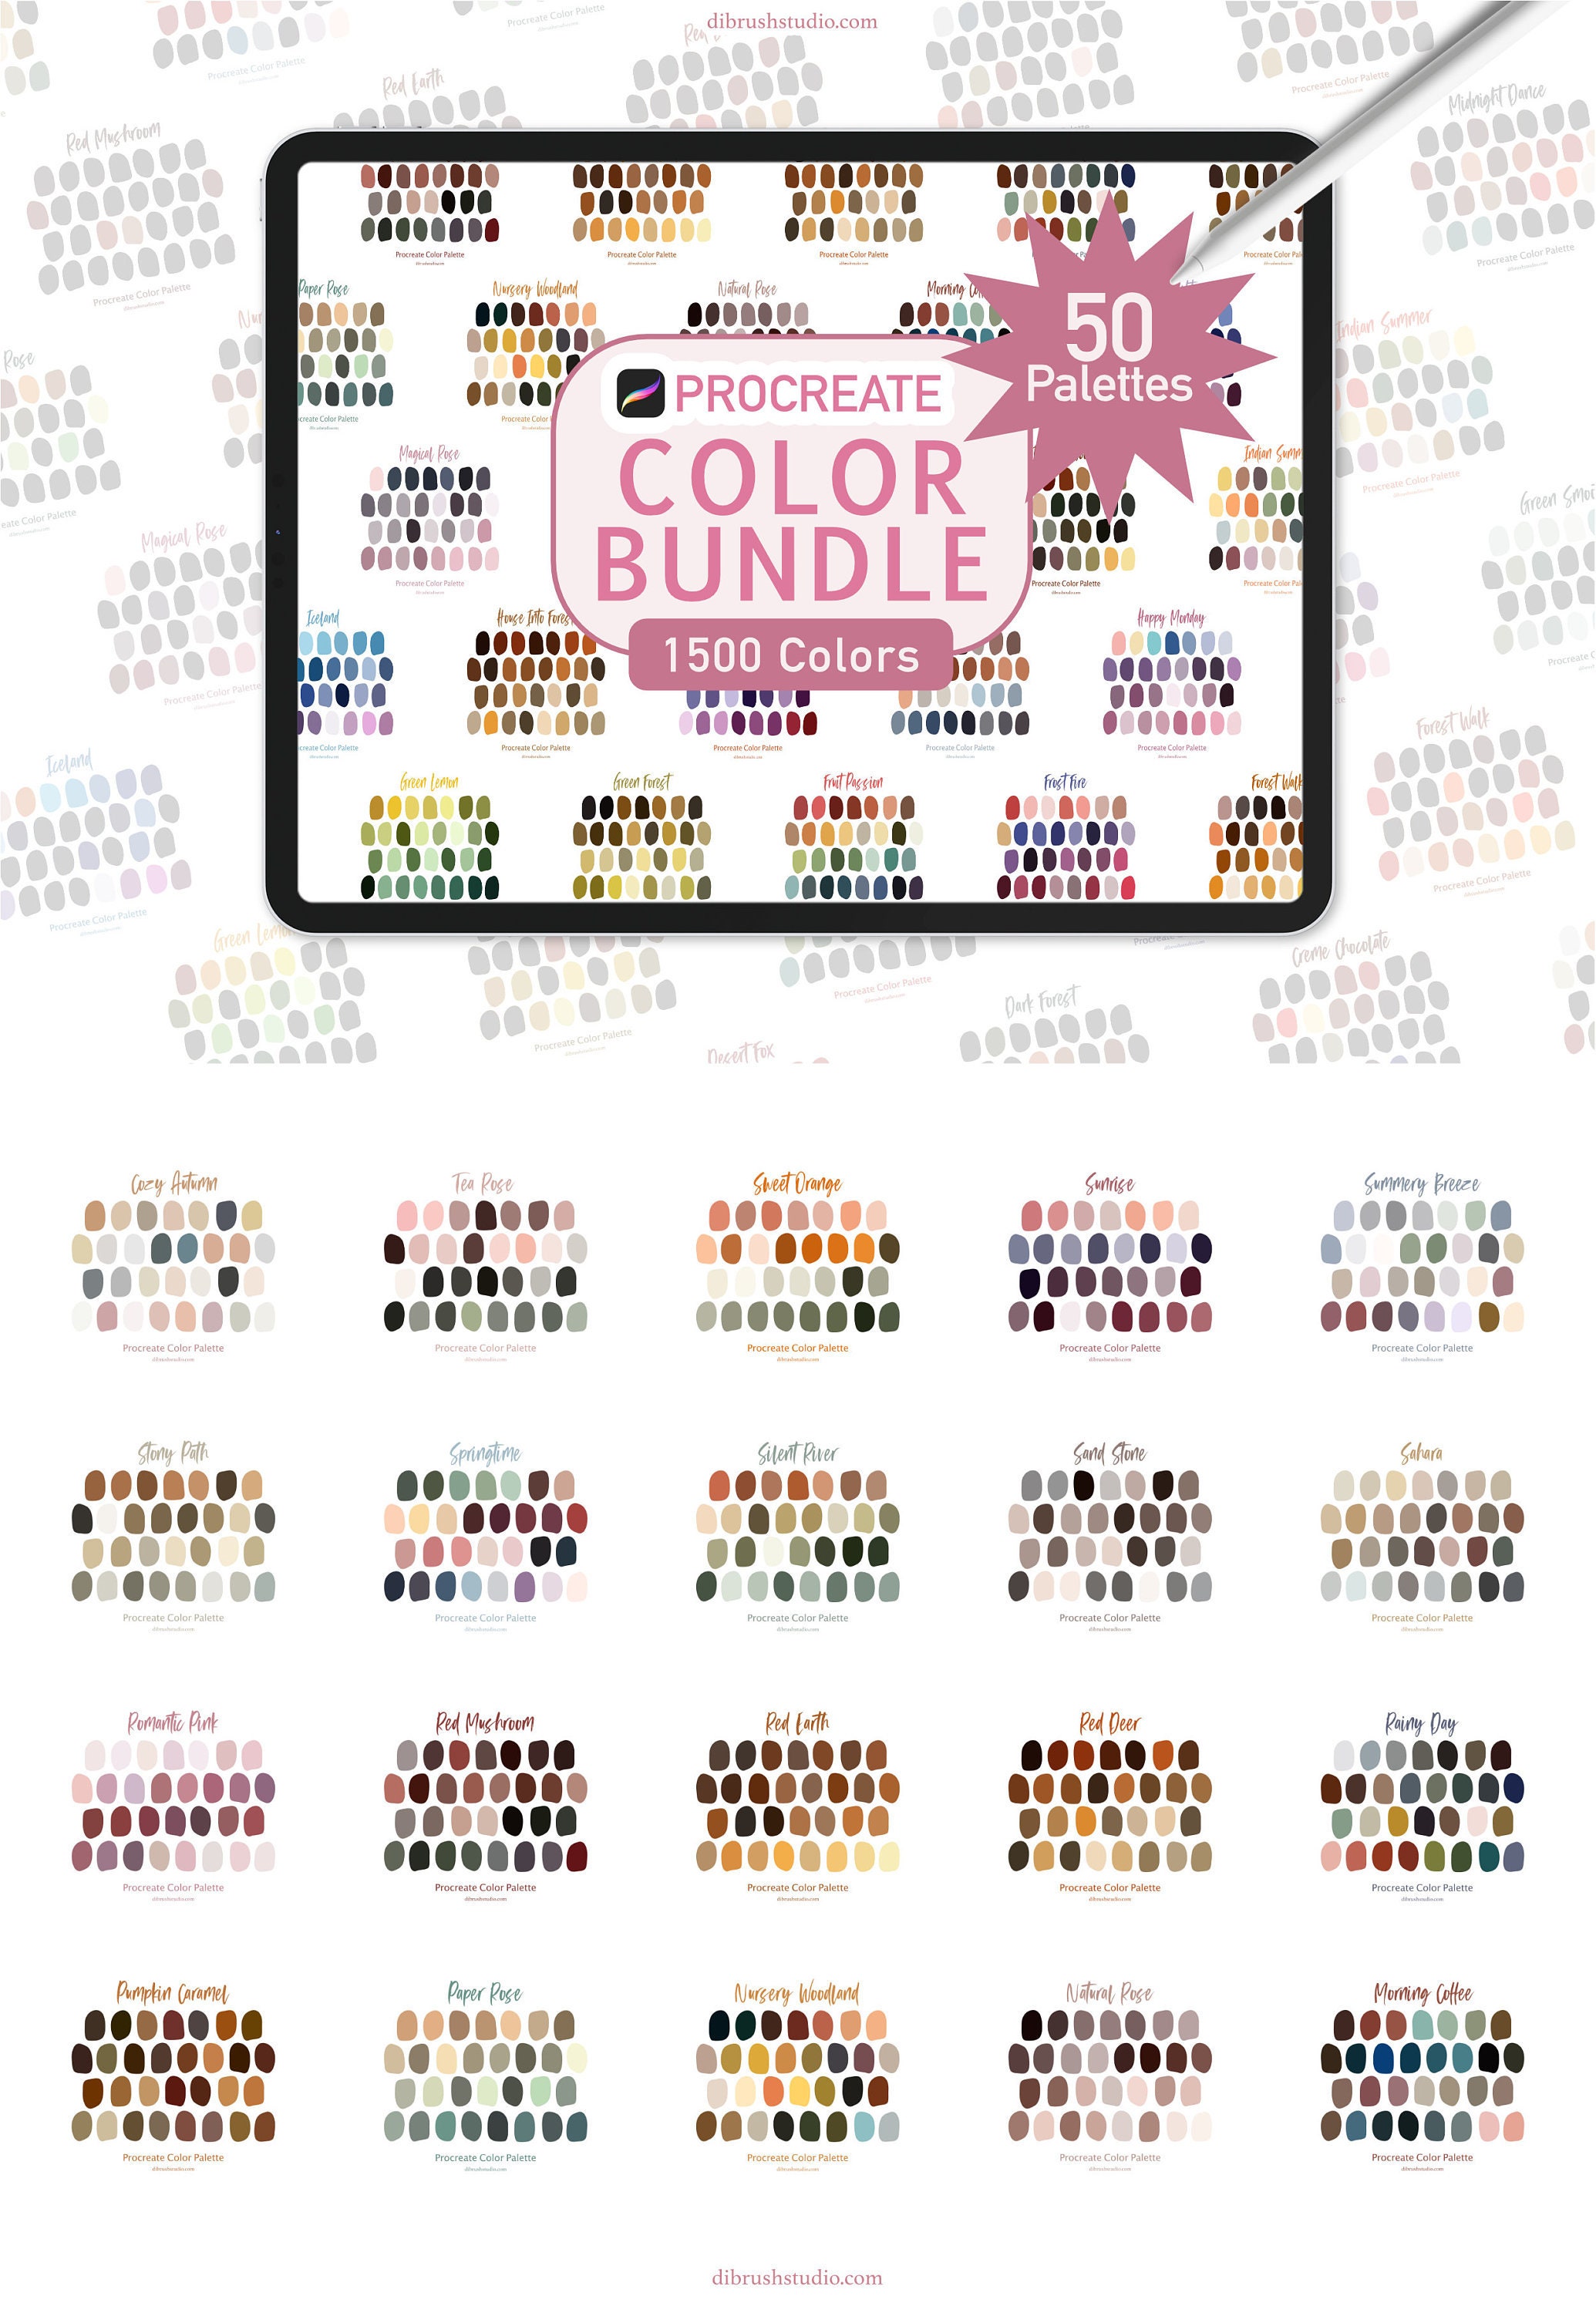 PROCREATE Color Bundle 50 Colorsets With 1500 Colors - Etsy